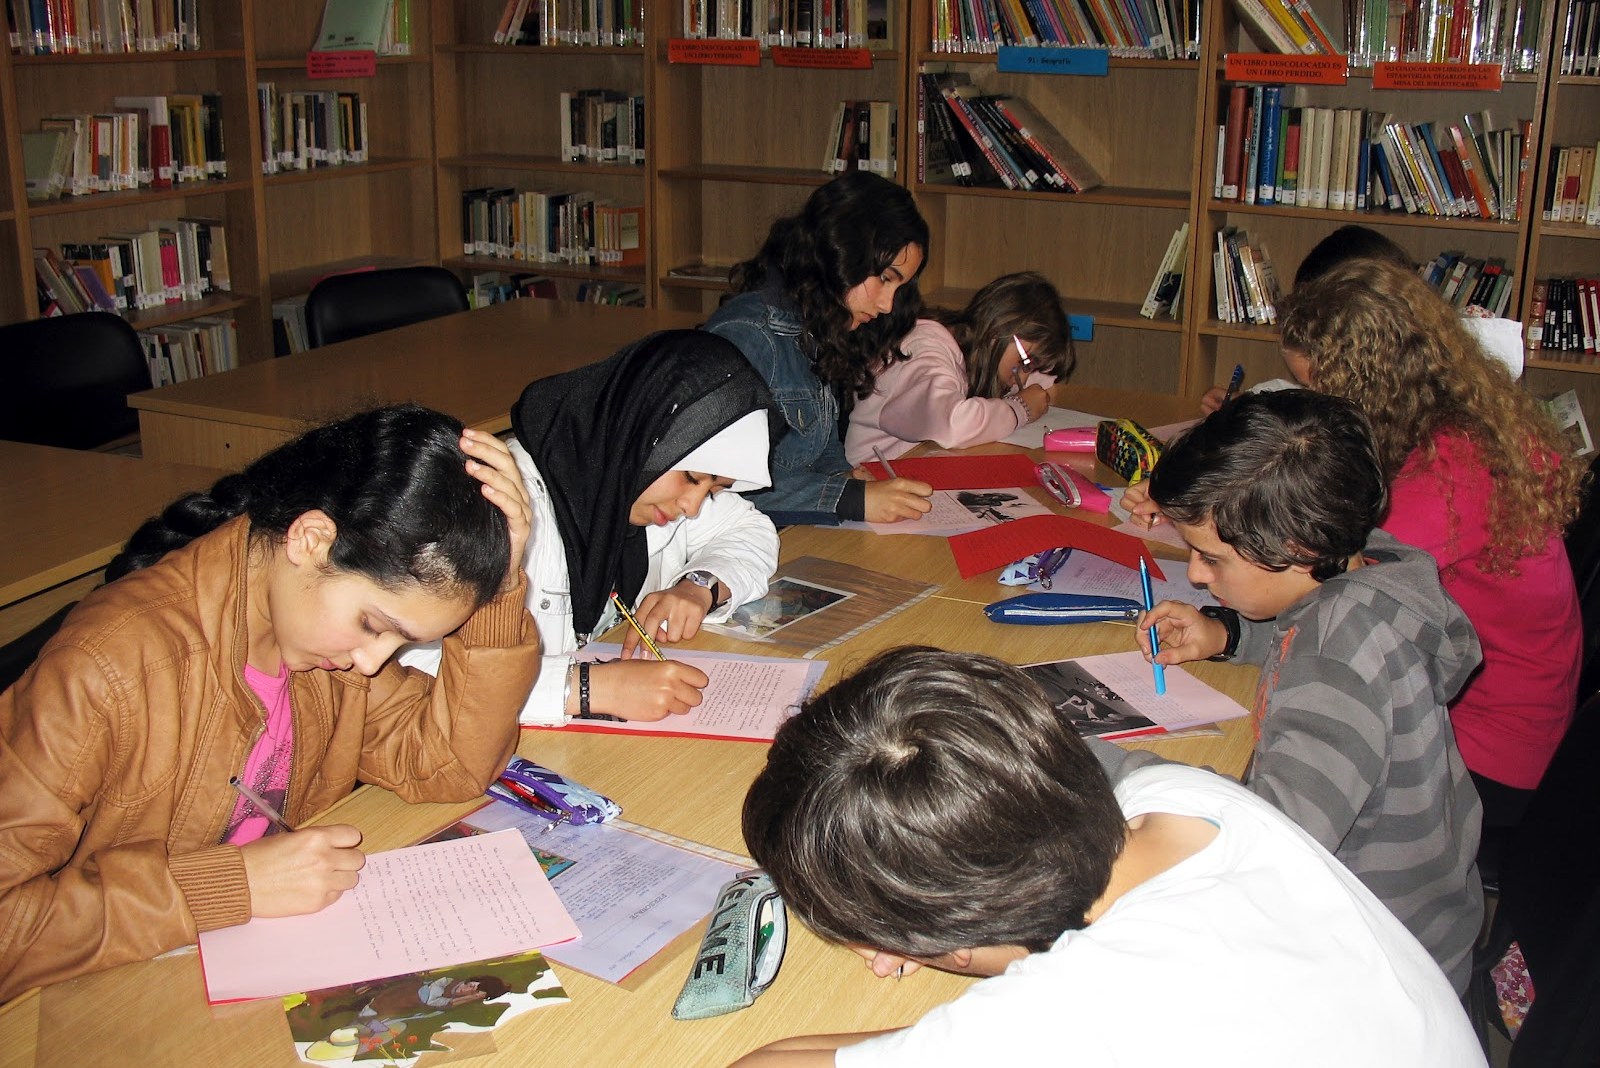 La biblioteca comienza trabajando con los niños, animándolos a amar la lectura